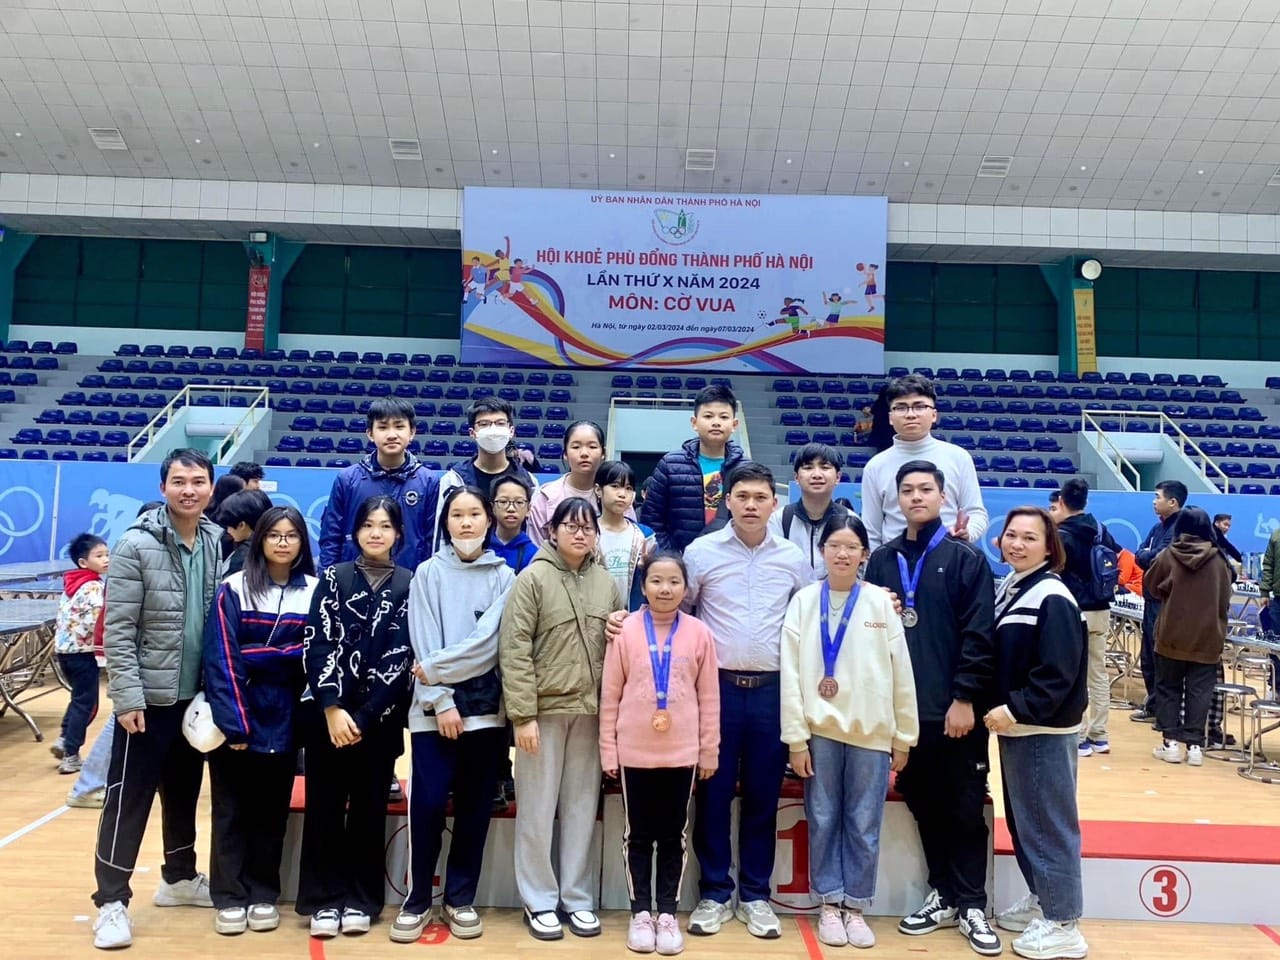 Nguyễn Thị Kim Ngân - học sinh lớp 4A2 trường TH Vân Canh đã đạt giải Ba môn Cờ vua tại Hội khỏe Phù Đổng TP Hà Nội